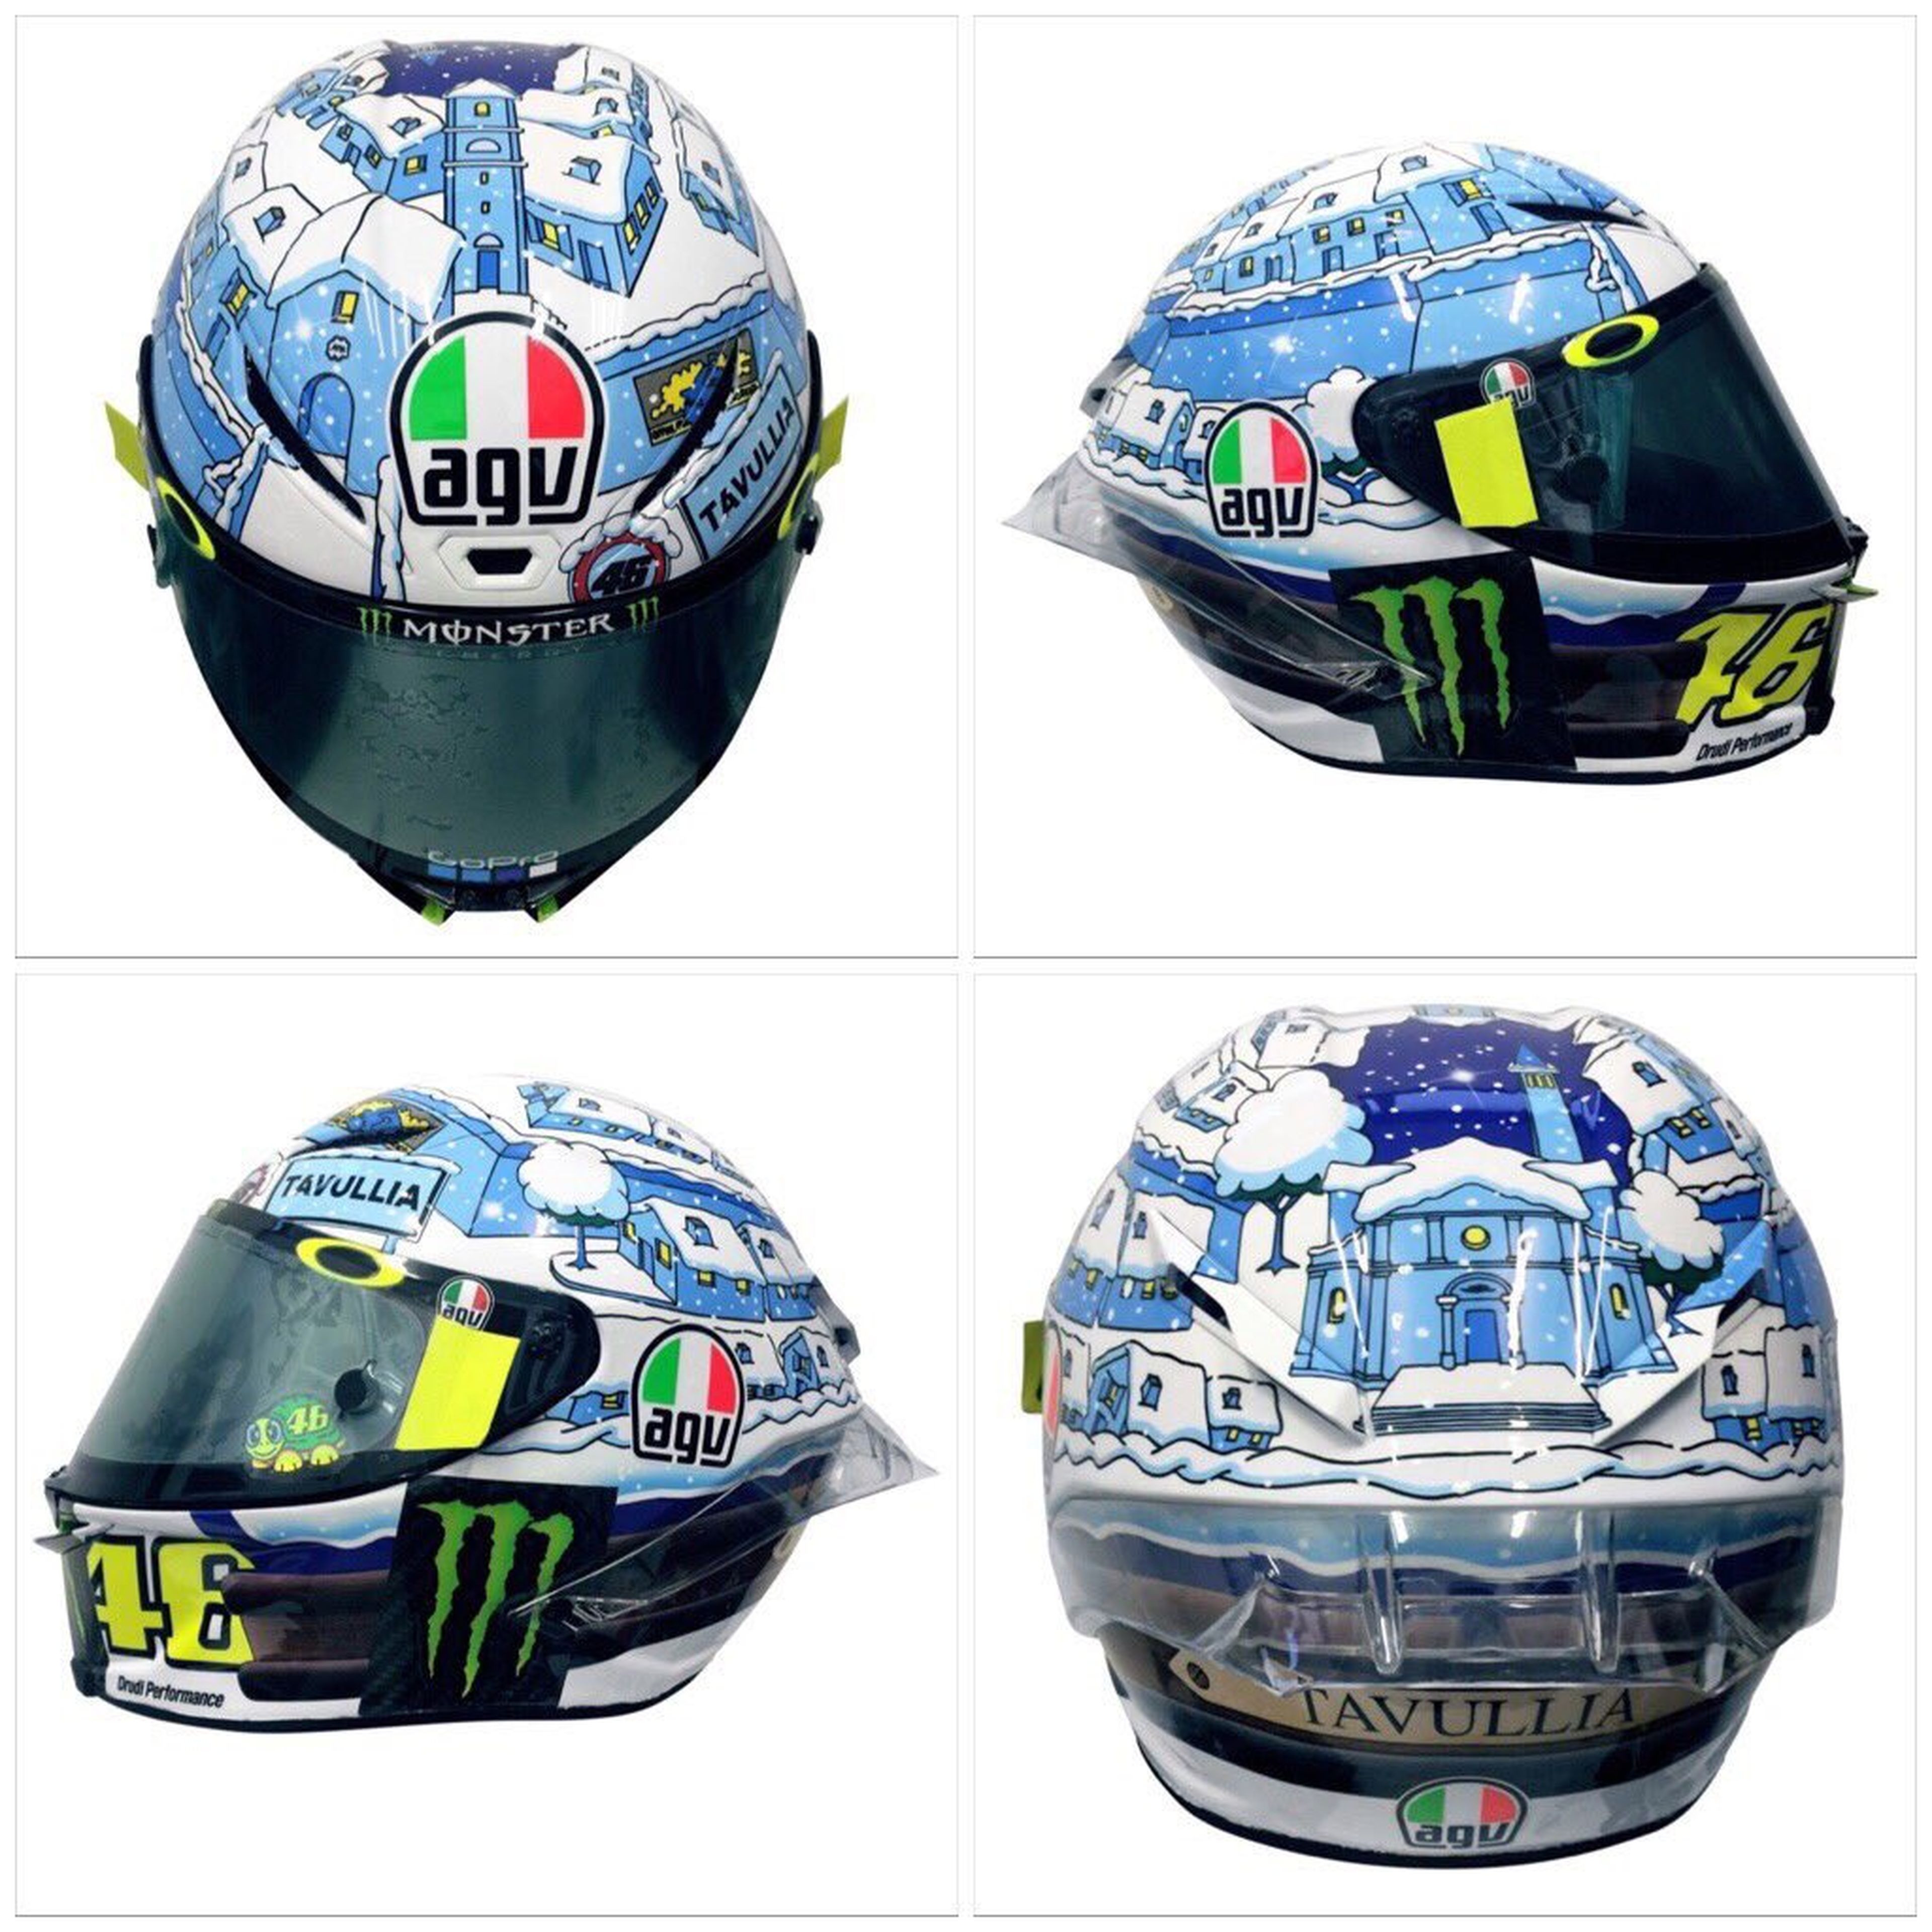 El casco de Valentino Rossi para los test de pretemporada